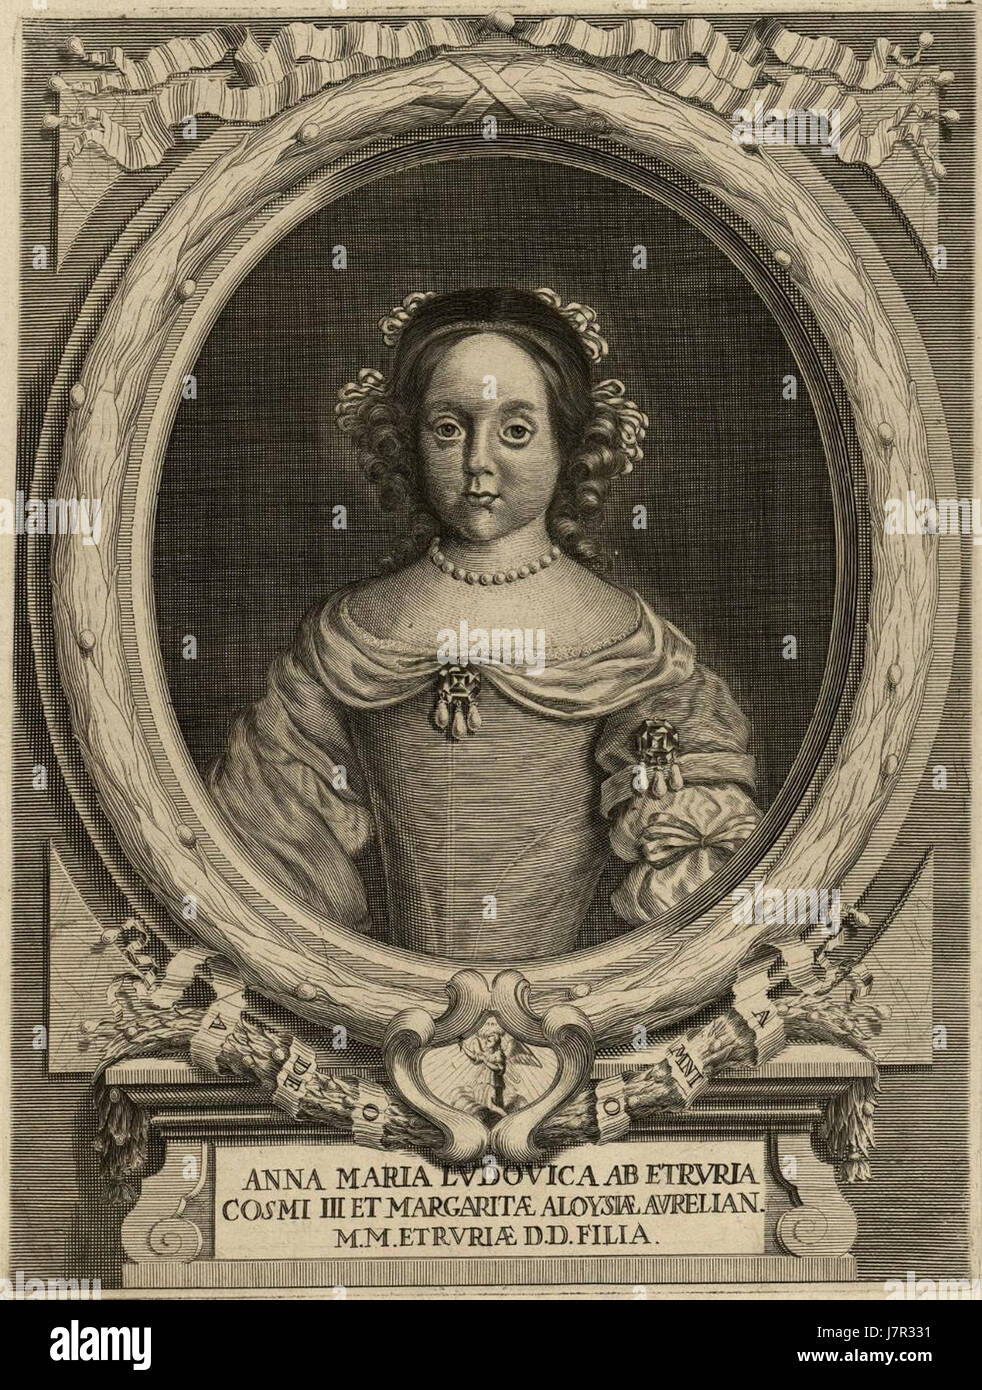 Anna Maria Ludovica ab Etruria, Cosimo III, Margarita Aloysia Aurelian. Stock Photo